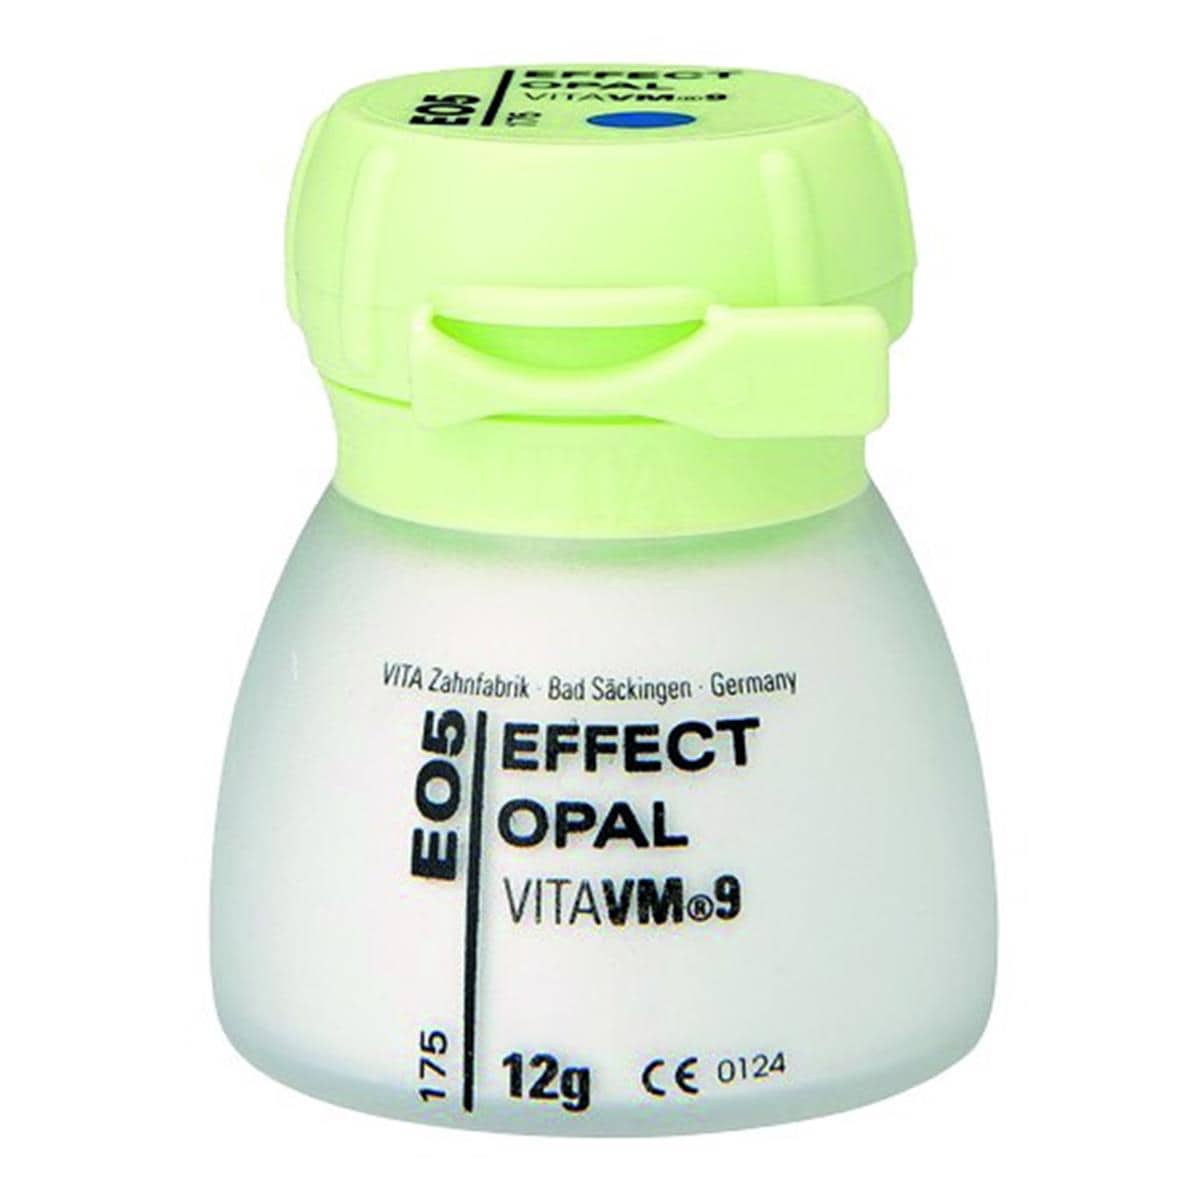 VM9 VITA - Effect Opal - EO4 - Le pot de 12 g